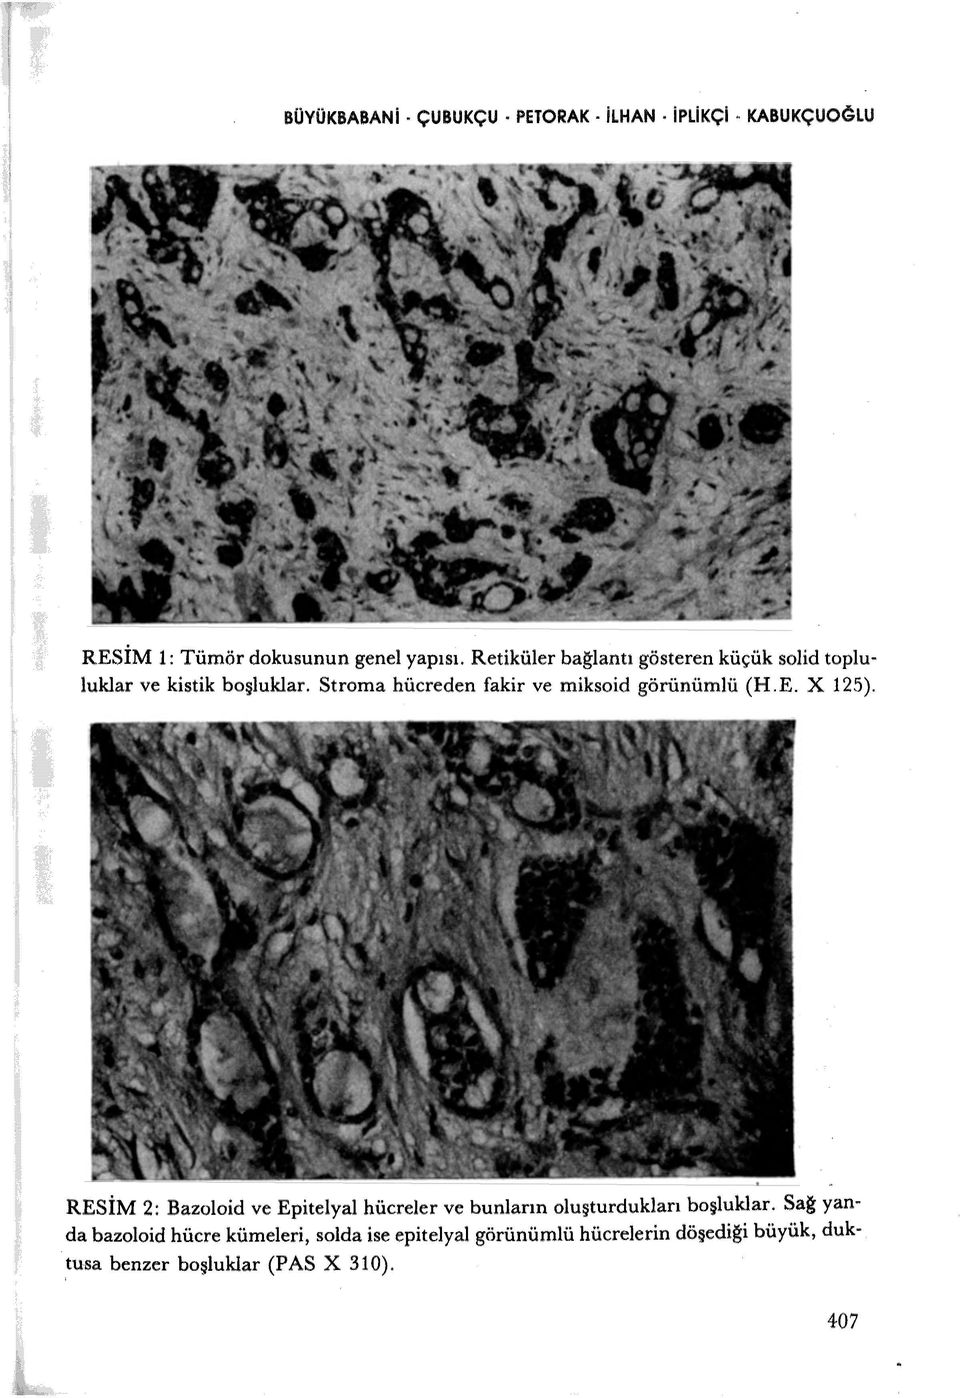 Stroma hücreden fakir ve miksoid görünümlü (H.E. X 125).